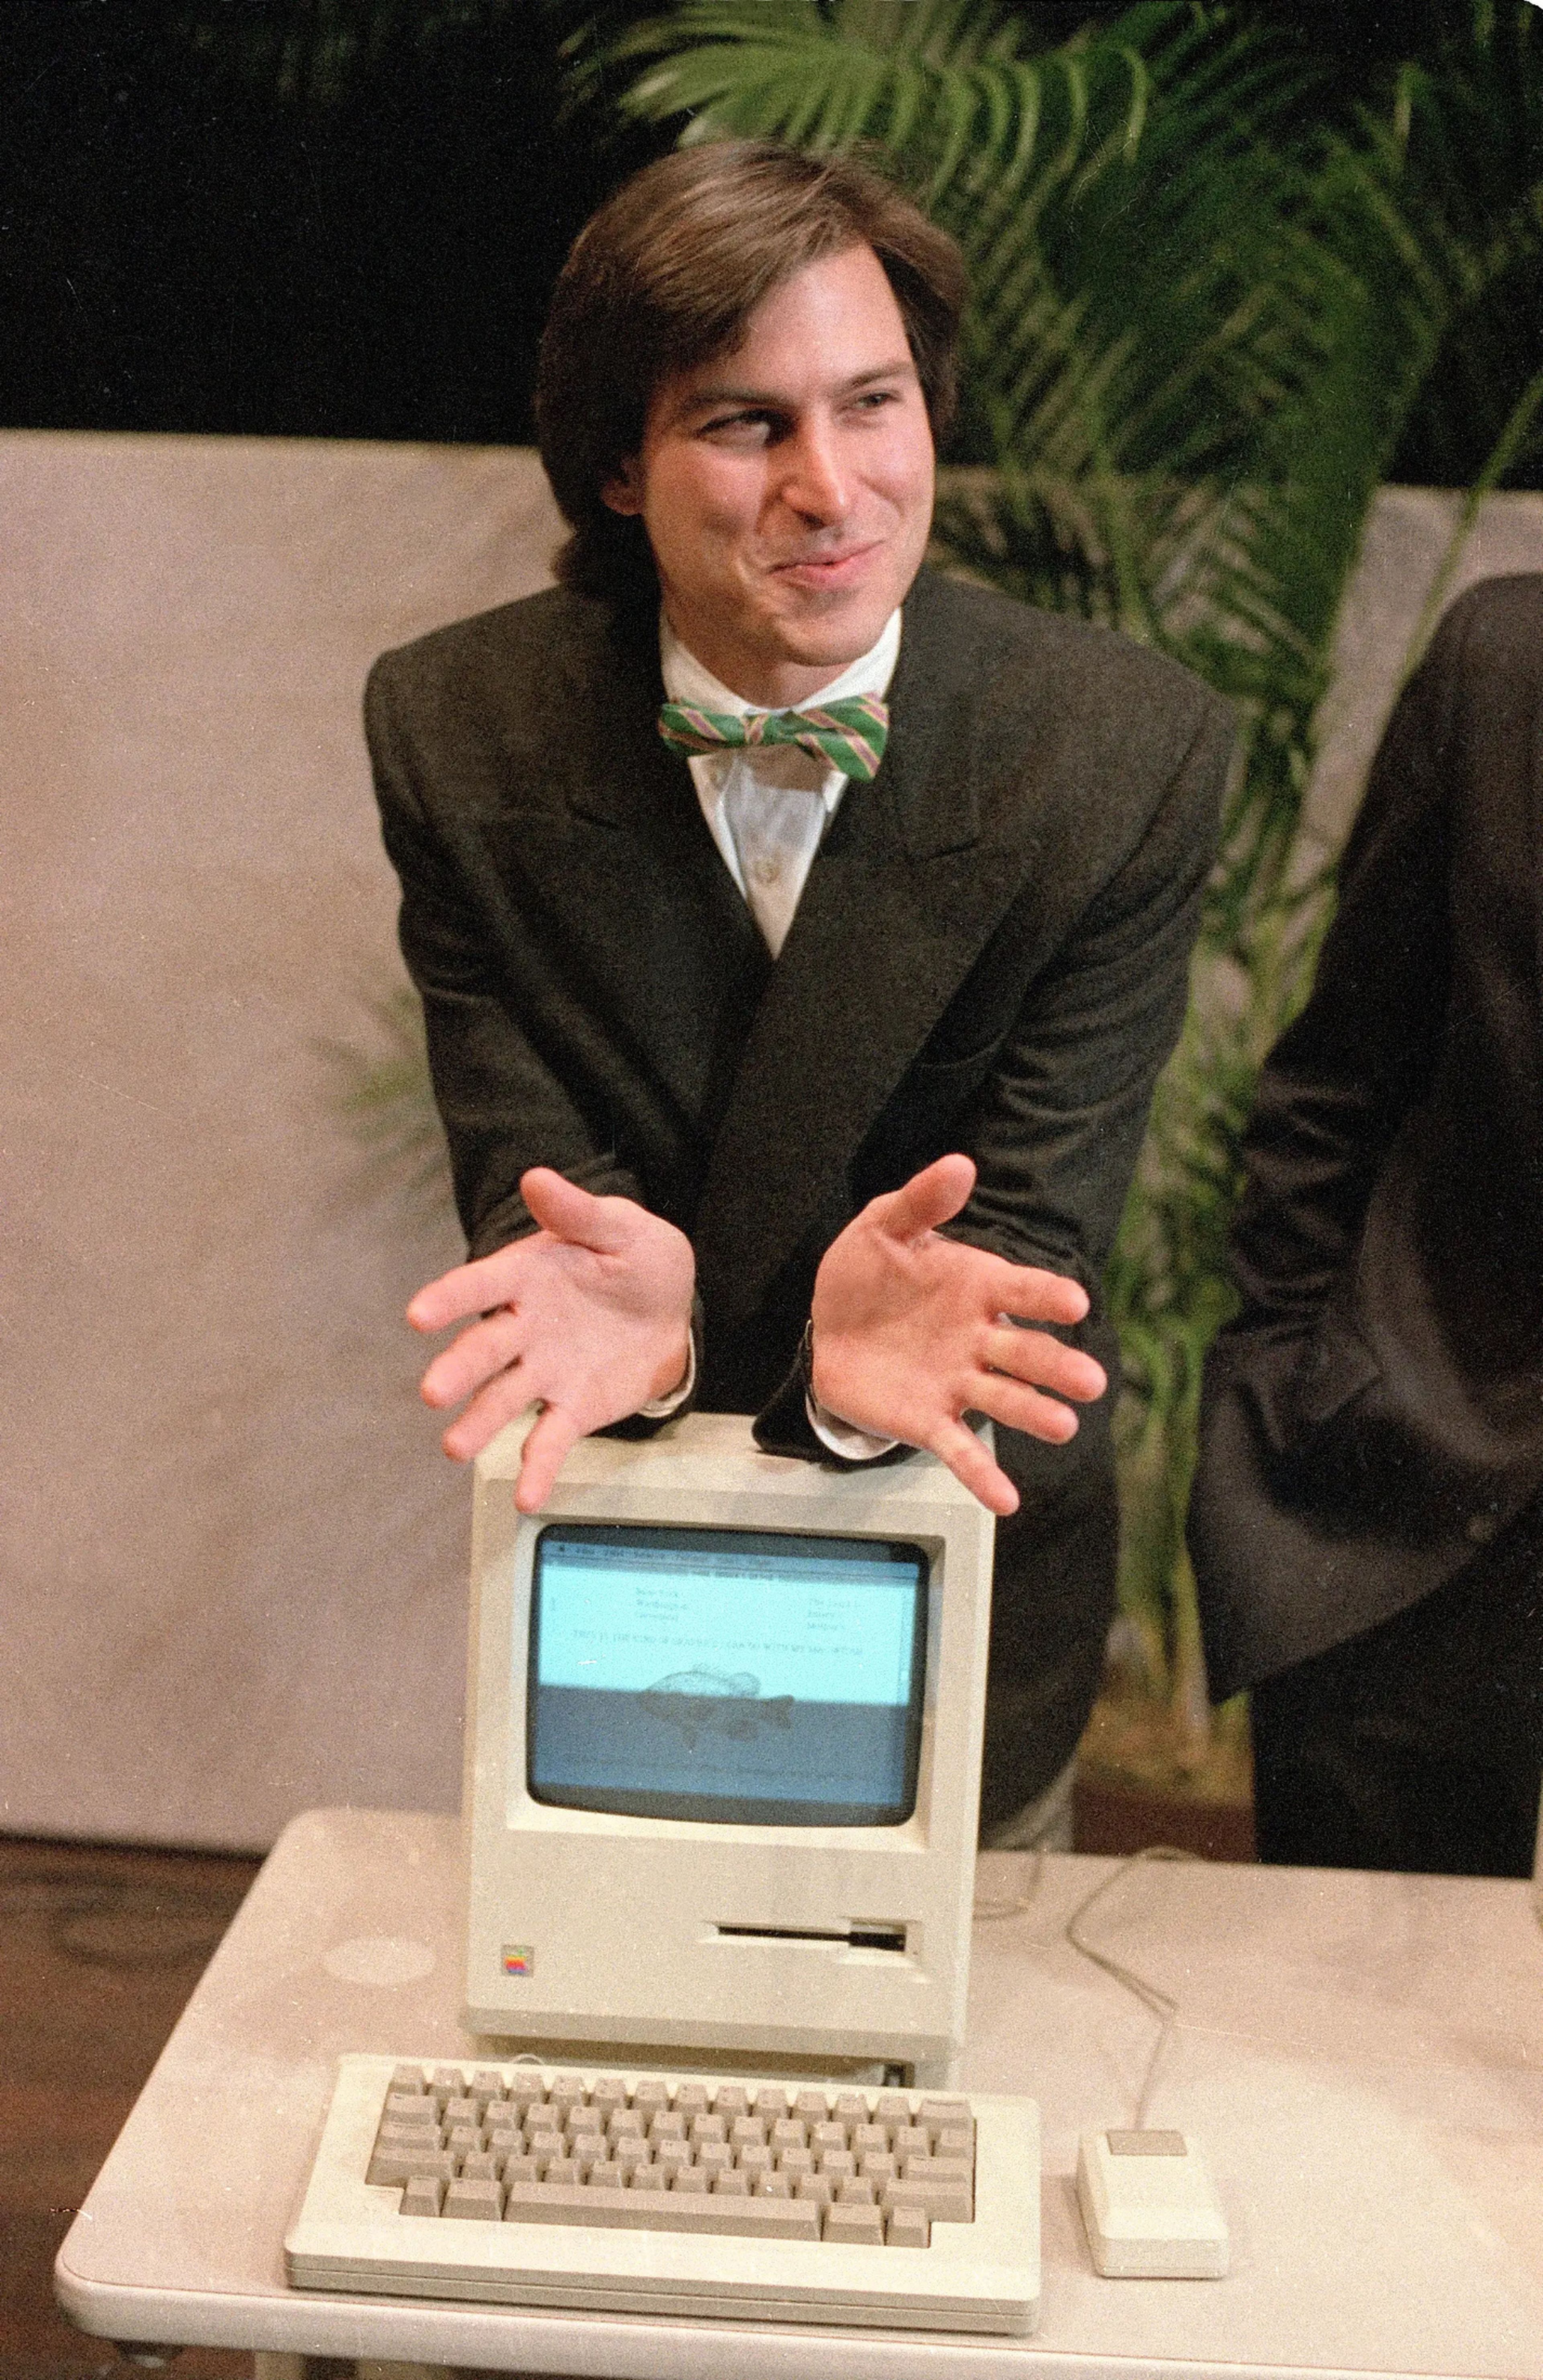 Jobs, presidente del consejo de administración de Apple Computer, y el nuevo ordenador personal Macintosh tras una junta de accionistas en Cupertino, alrededor de 1984. 